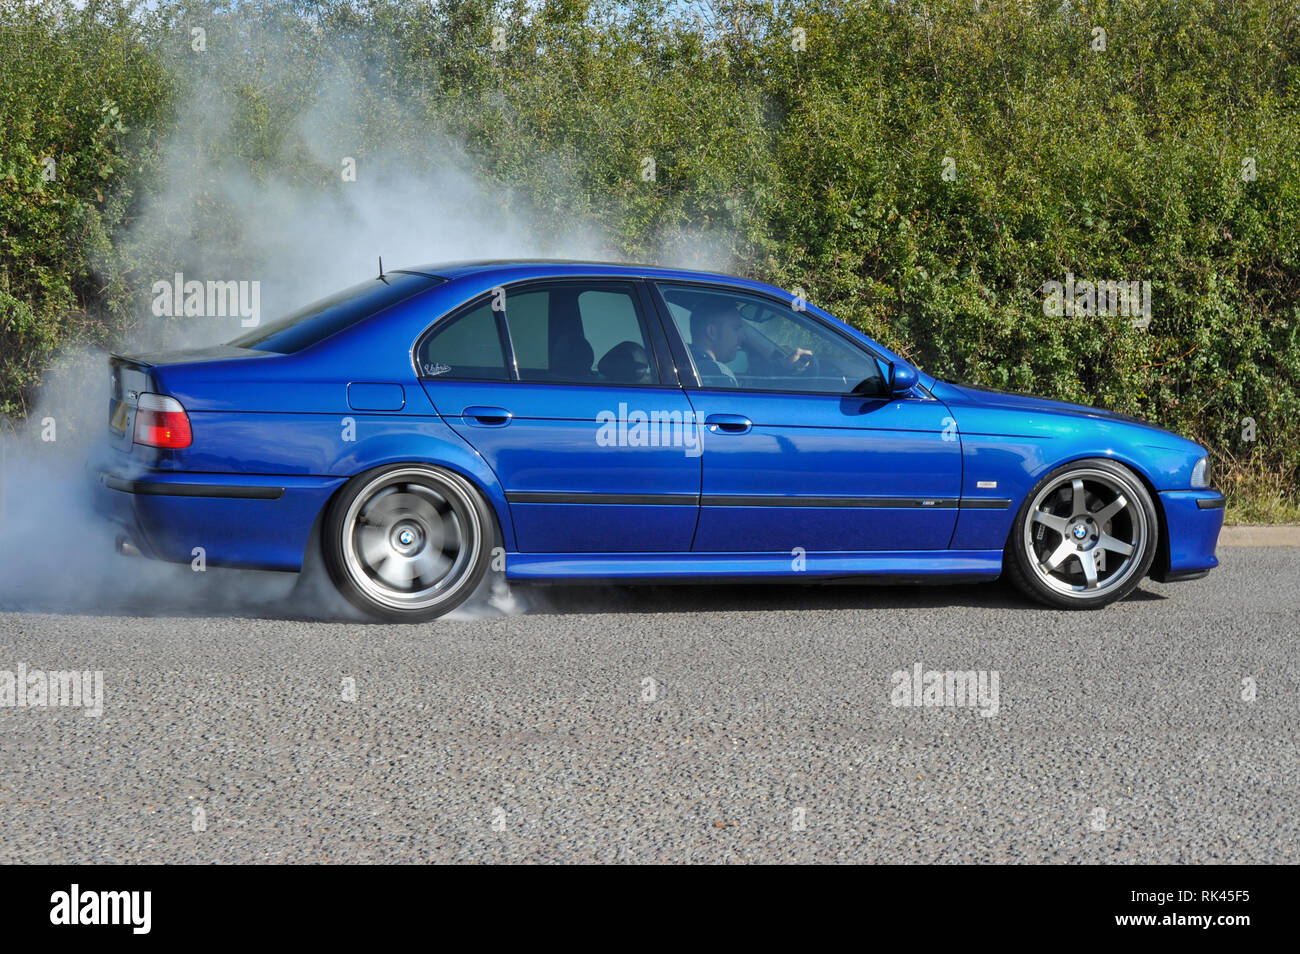 Massive reifen rauchen Burnout von BMW E39 M5 super Limousine